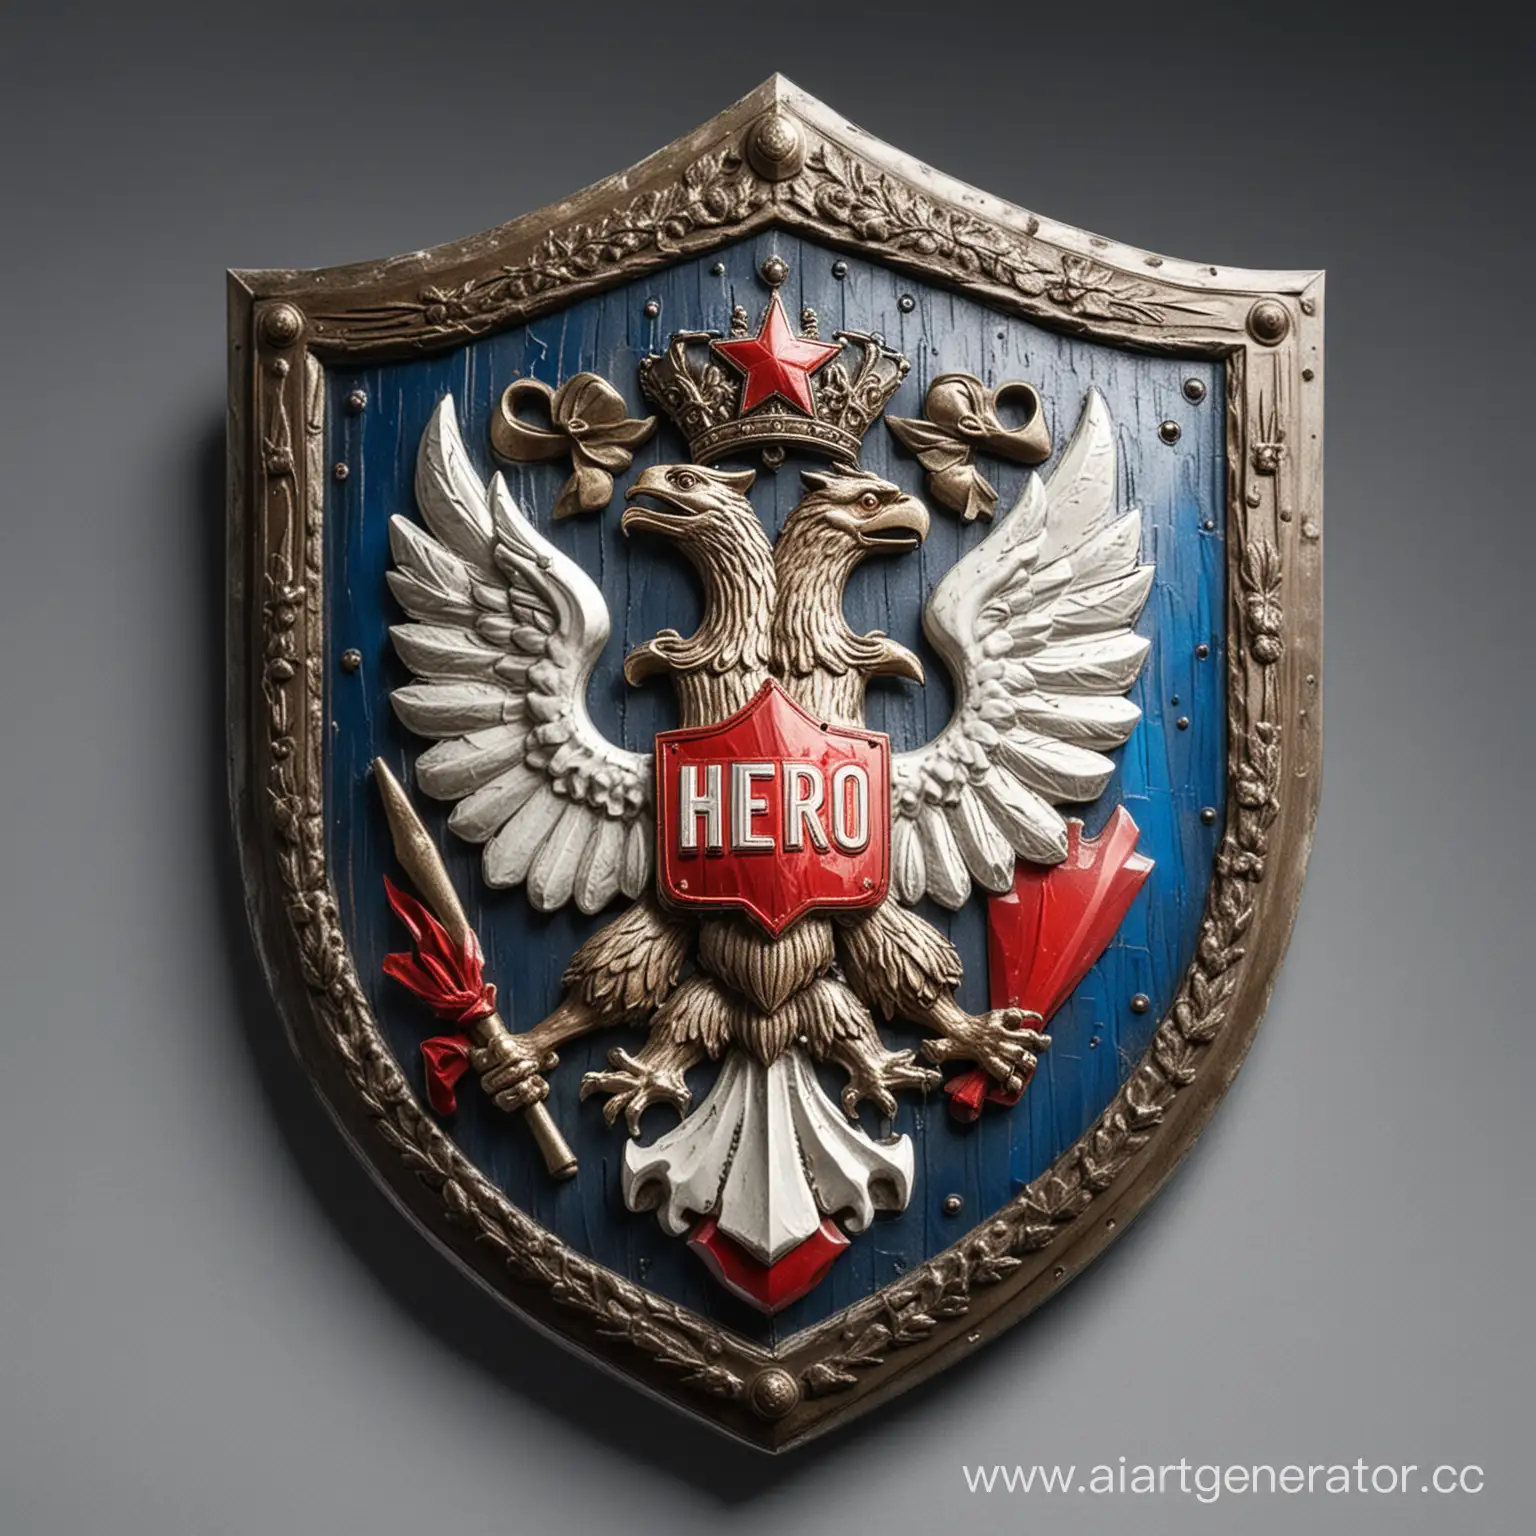 люди удостоенные звания "герой Российской Федерации"

используй красный, синий и белый, и картинку щита